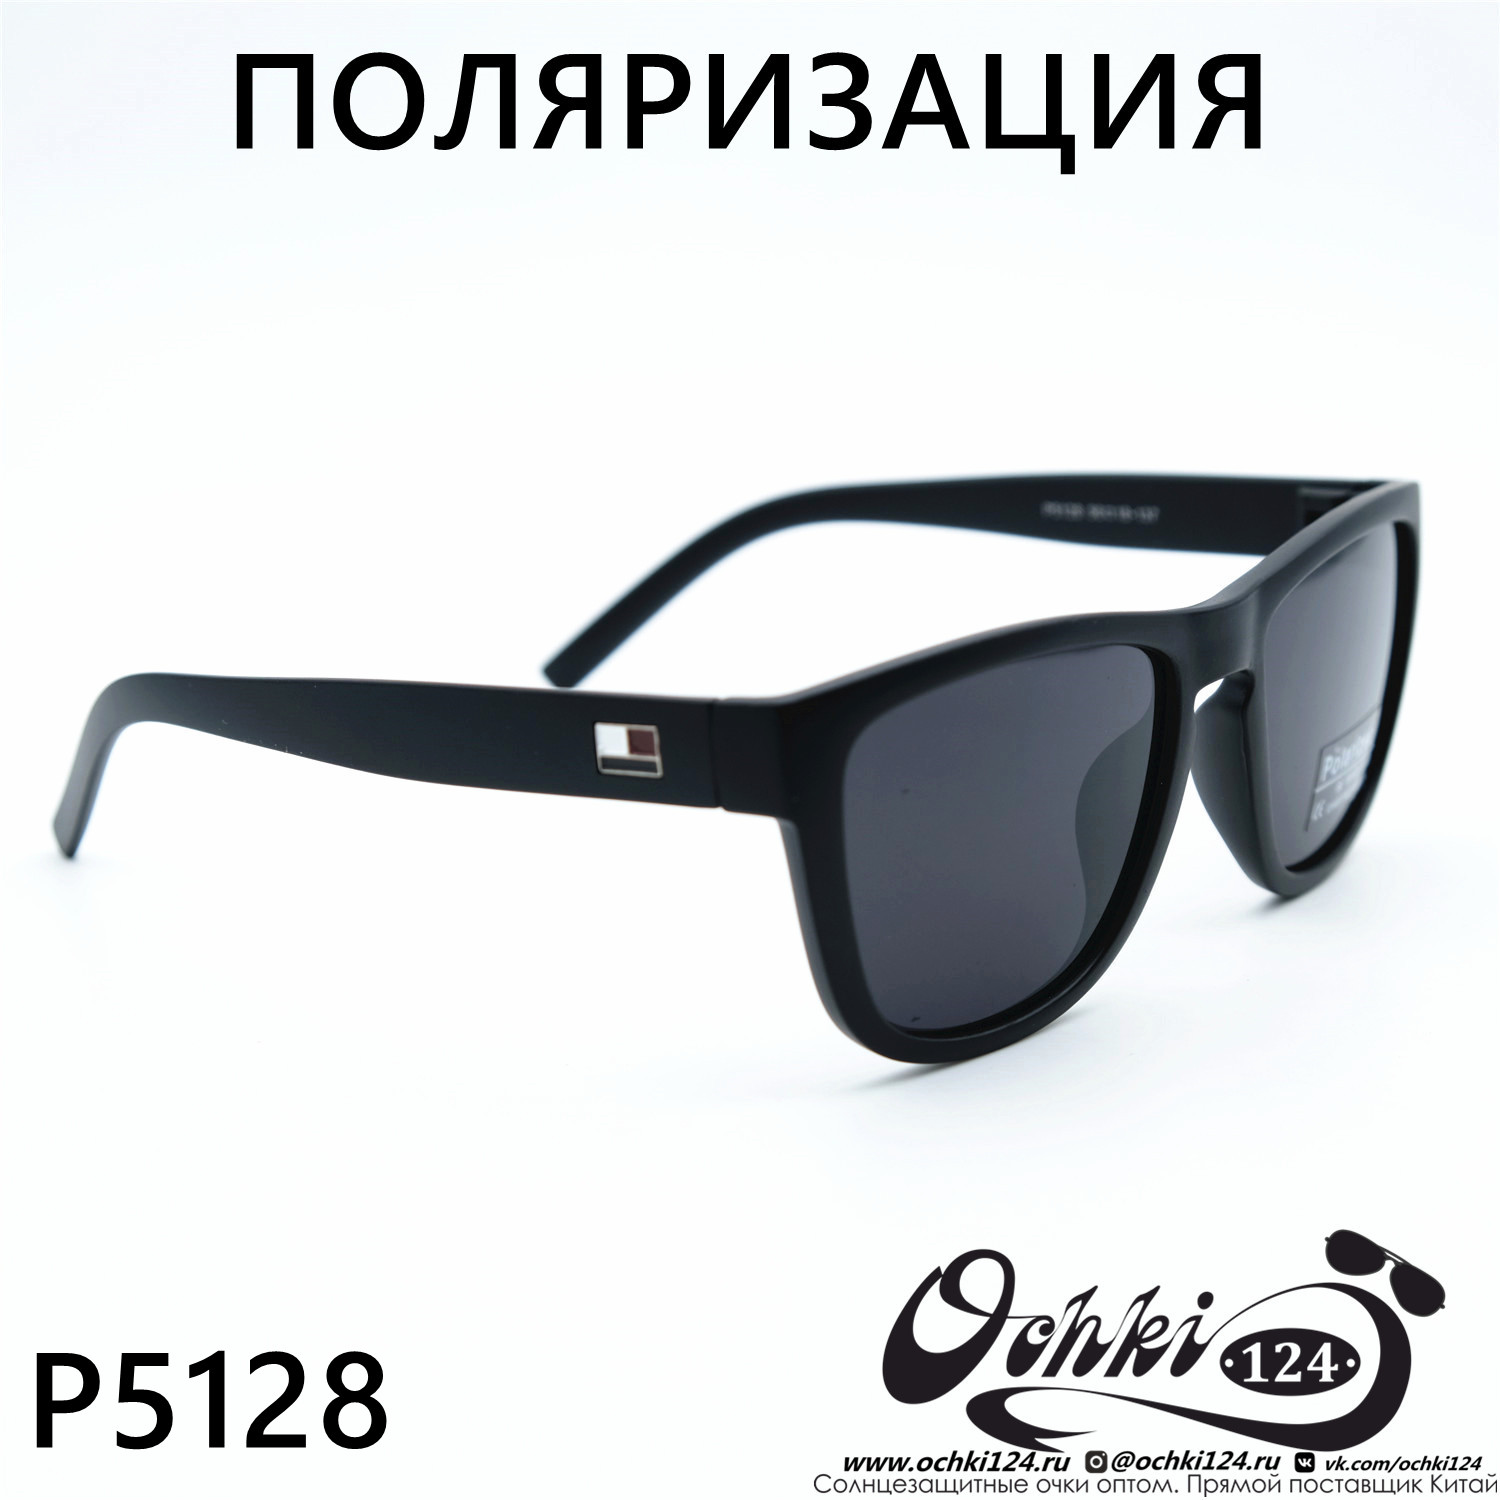  Солнцезащитные очки картинка 2023 Мужские Стандартные Polarized P5128-C3 